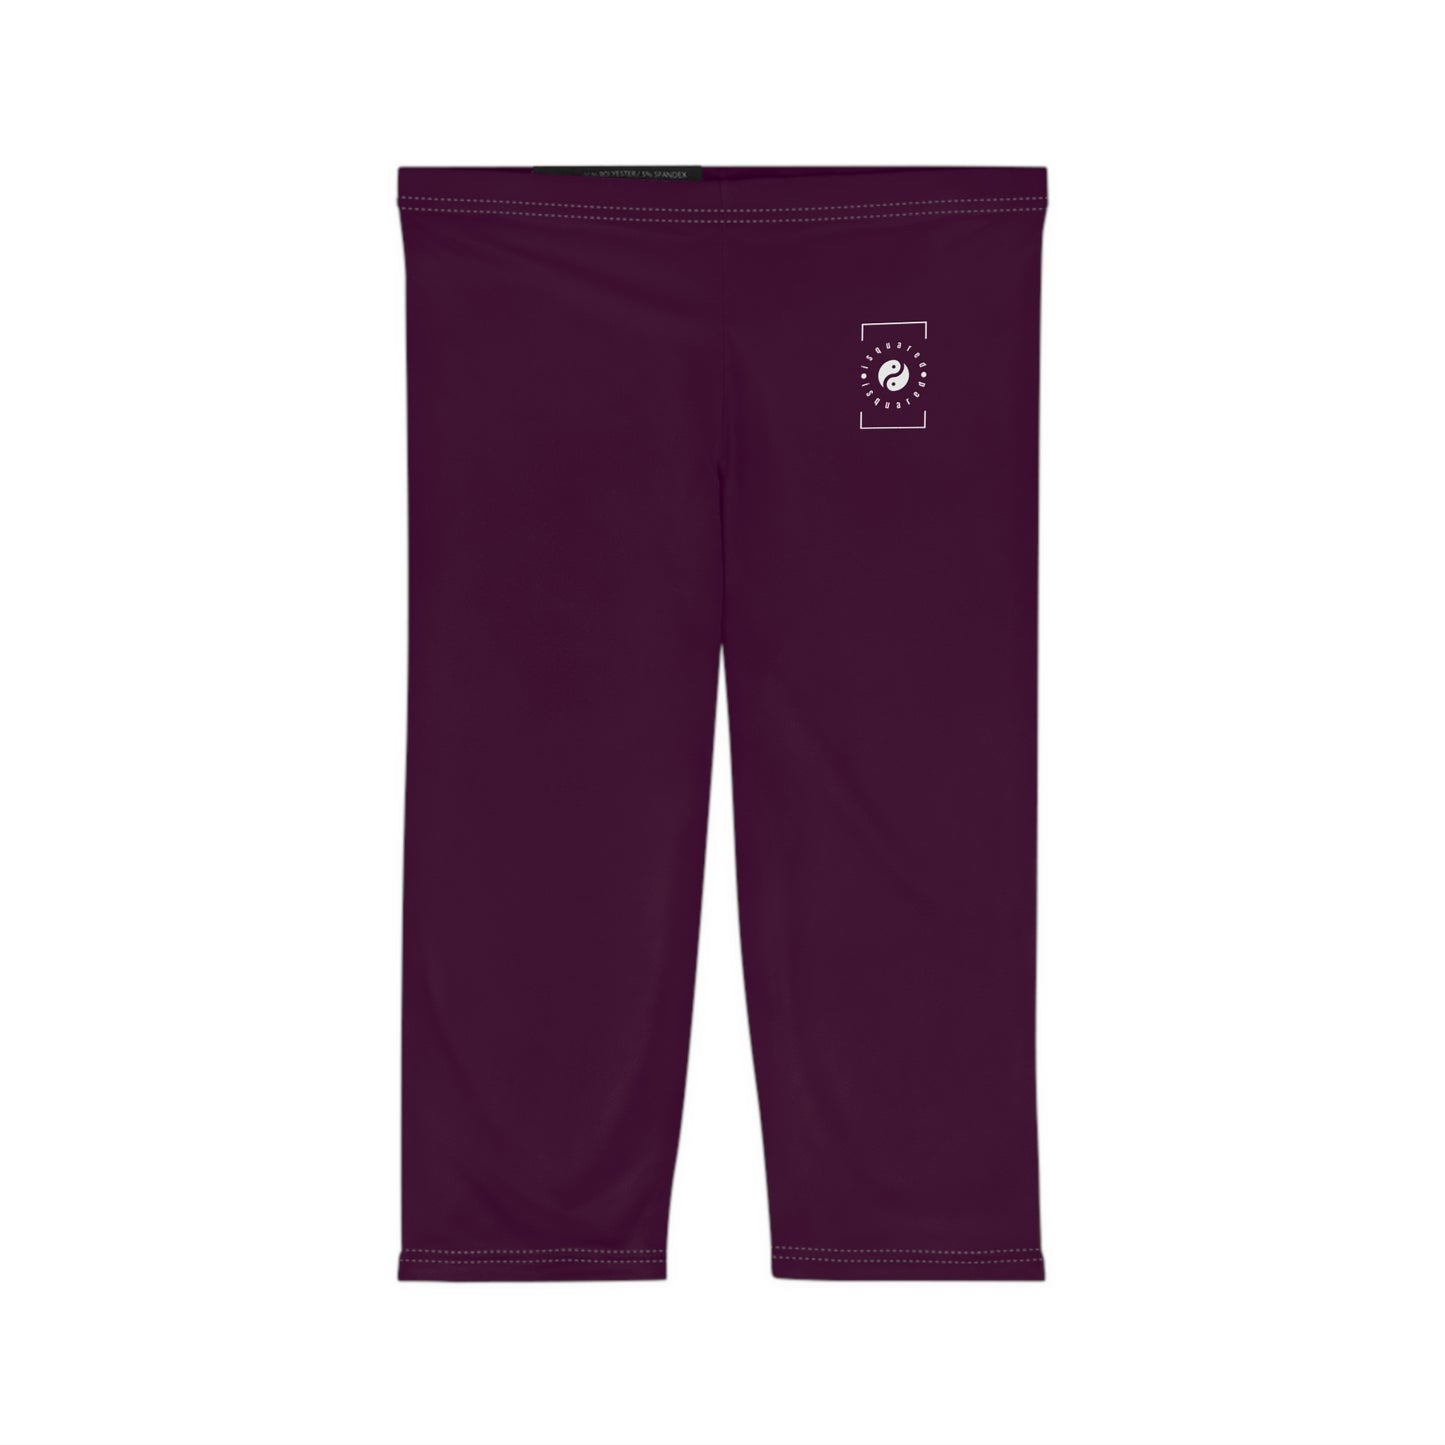 Deep Burgundy - Capri Shorts